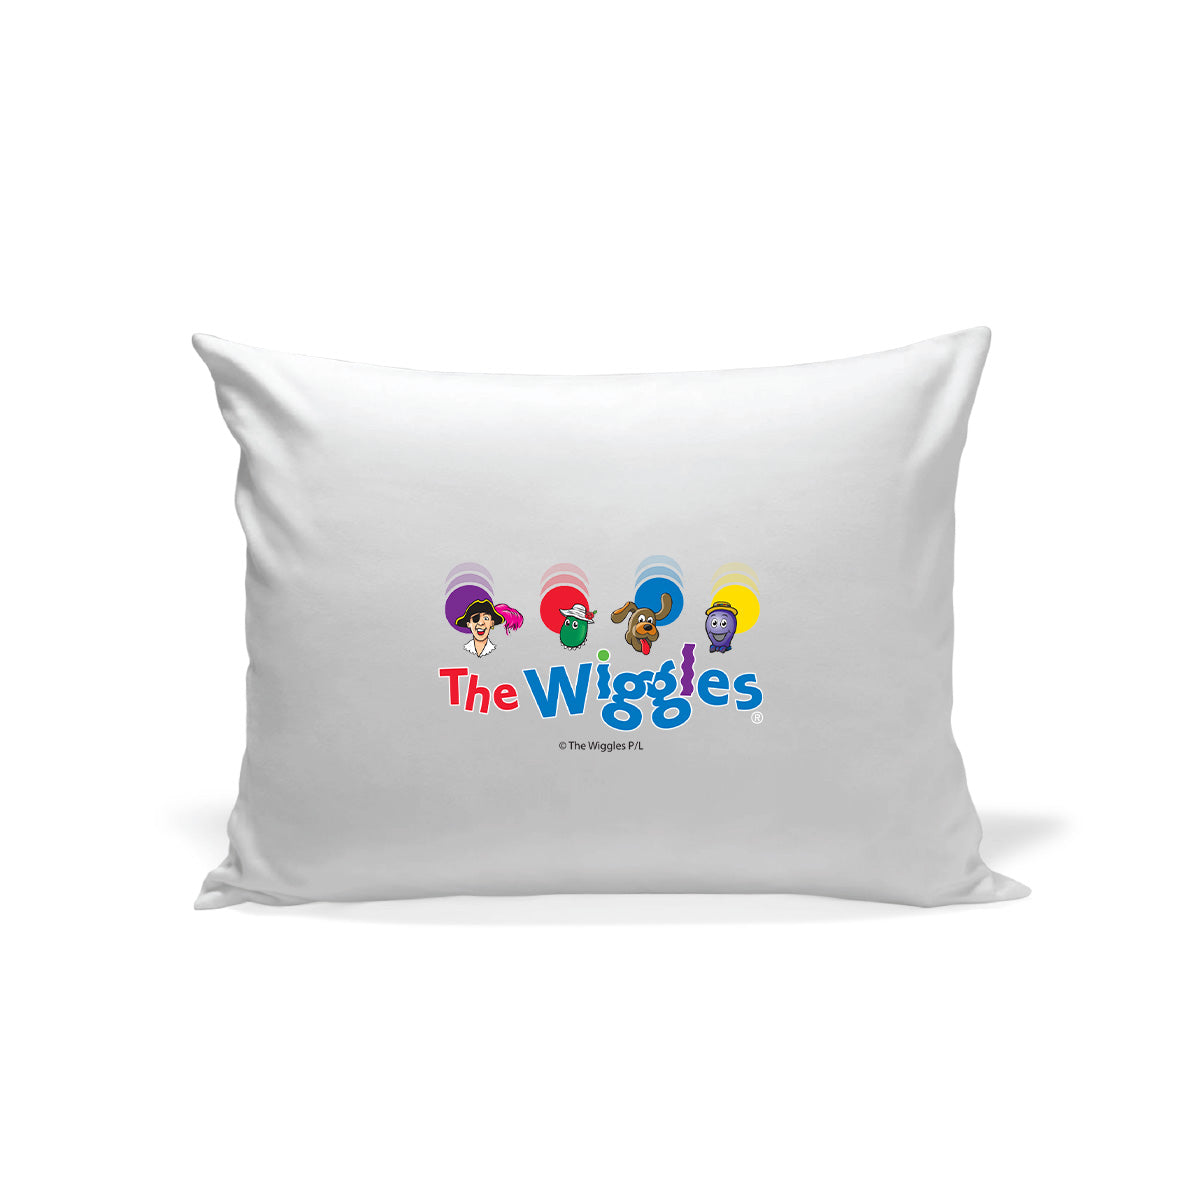 The Wiggles Original Friends Pillowcase